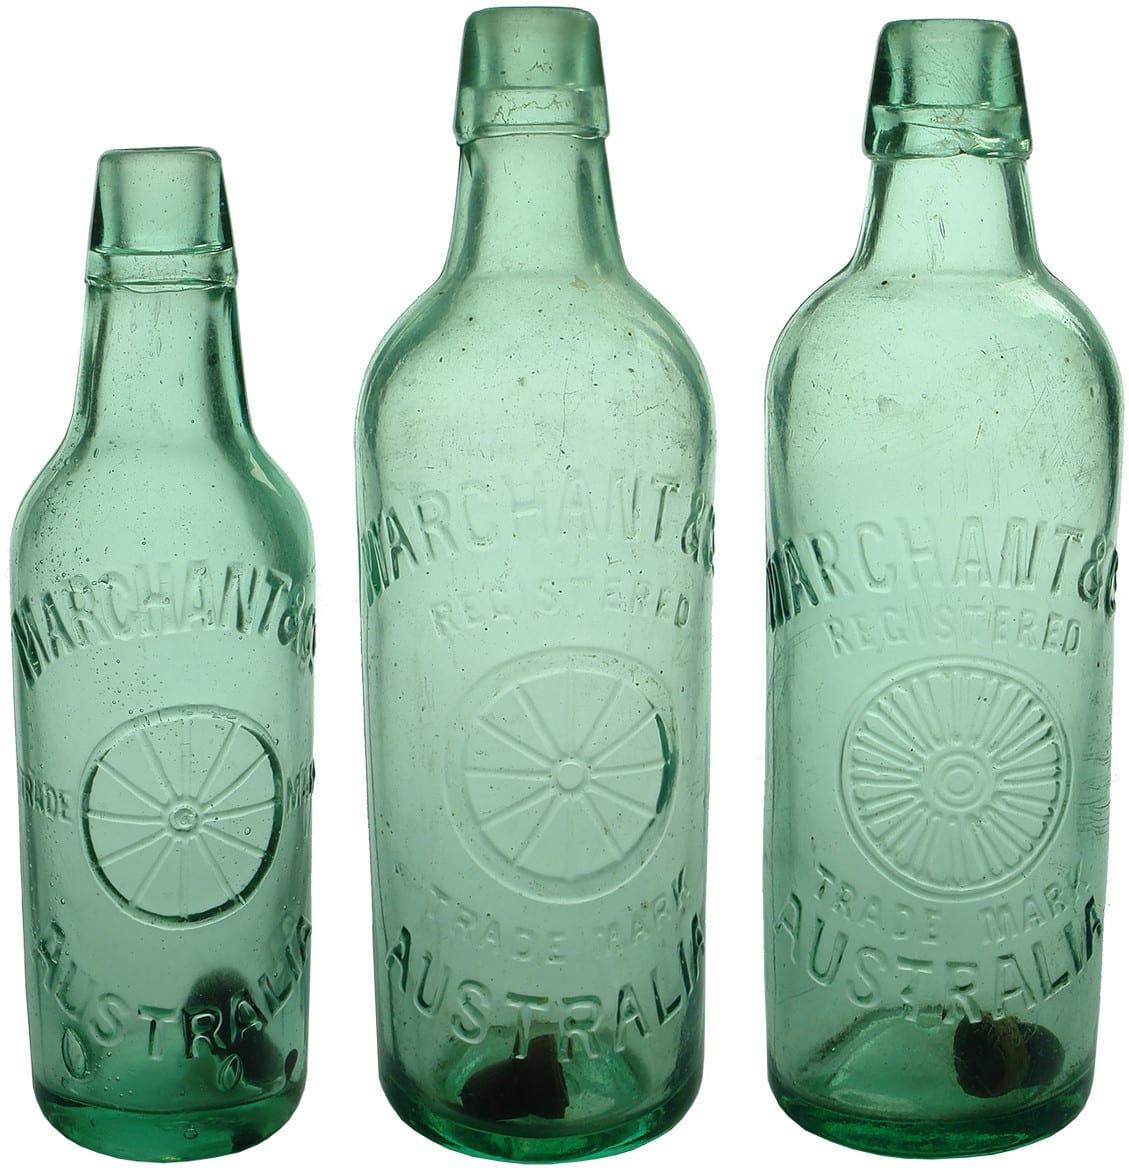 Antique Marchant Lamont Patent Soft Drink Bottles